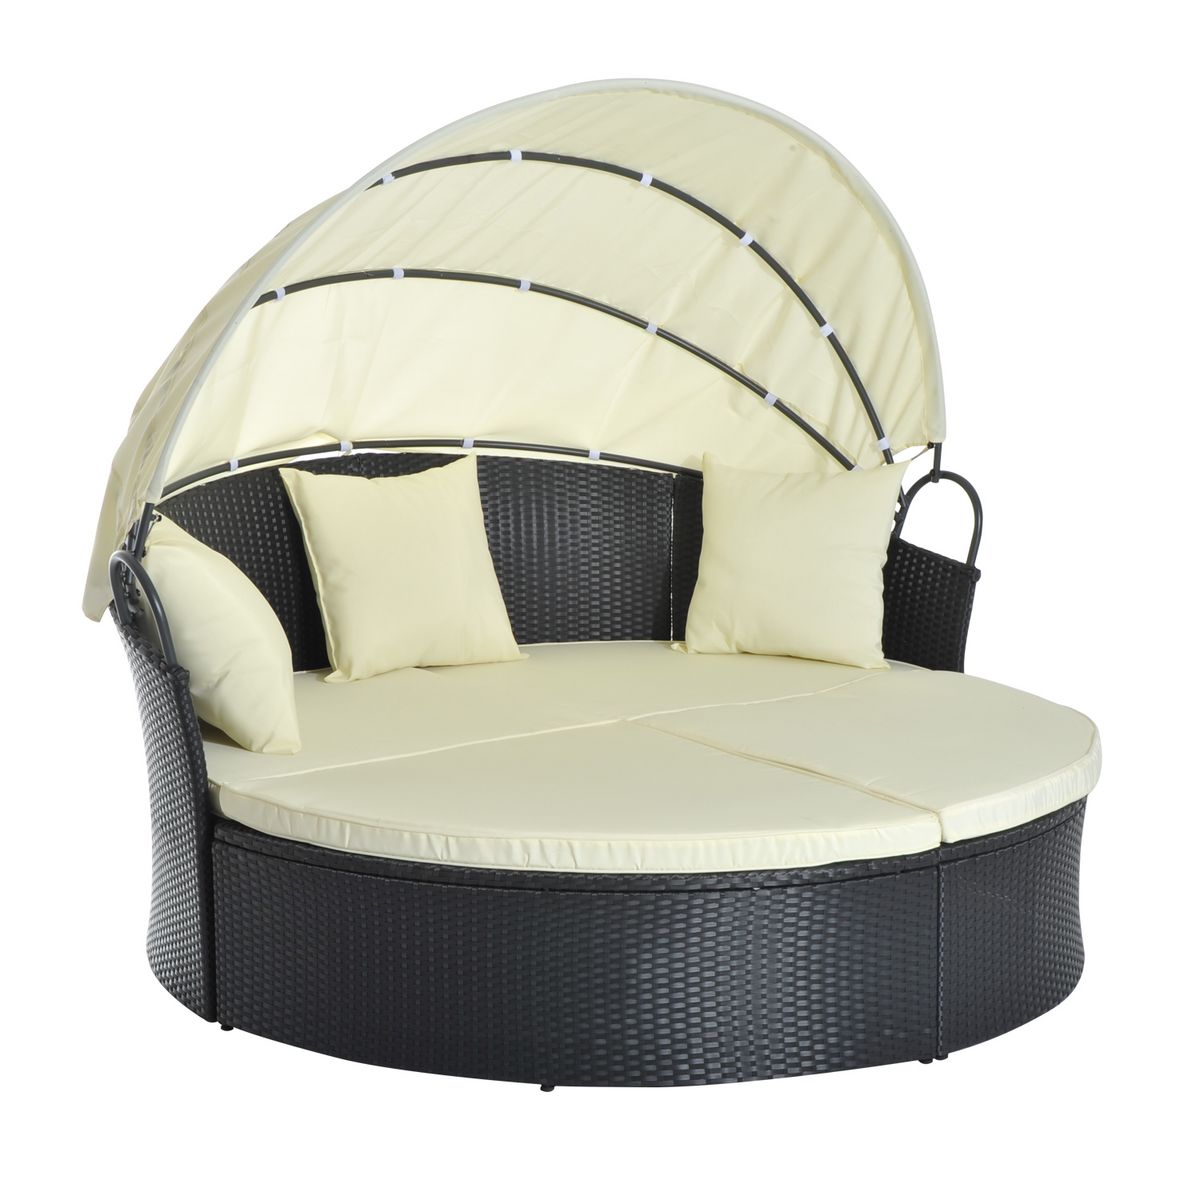 OUTSUNNY Lit canapé de jardin modulable grand confort pare-soleil pliable intégré 4 coussins 3 oreillers 171L x 180l x 155H cm métal résine tressée polyester noir beige